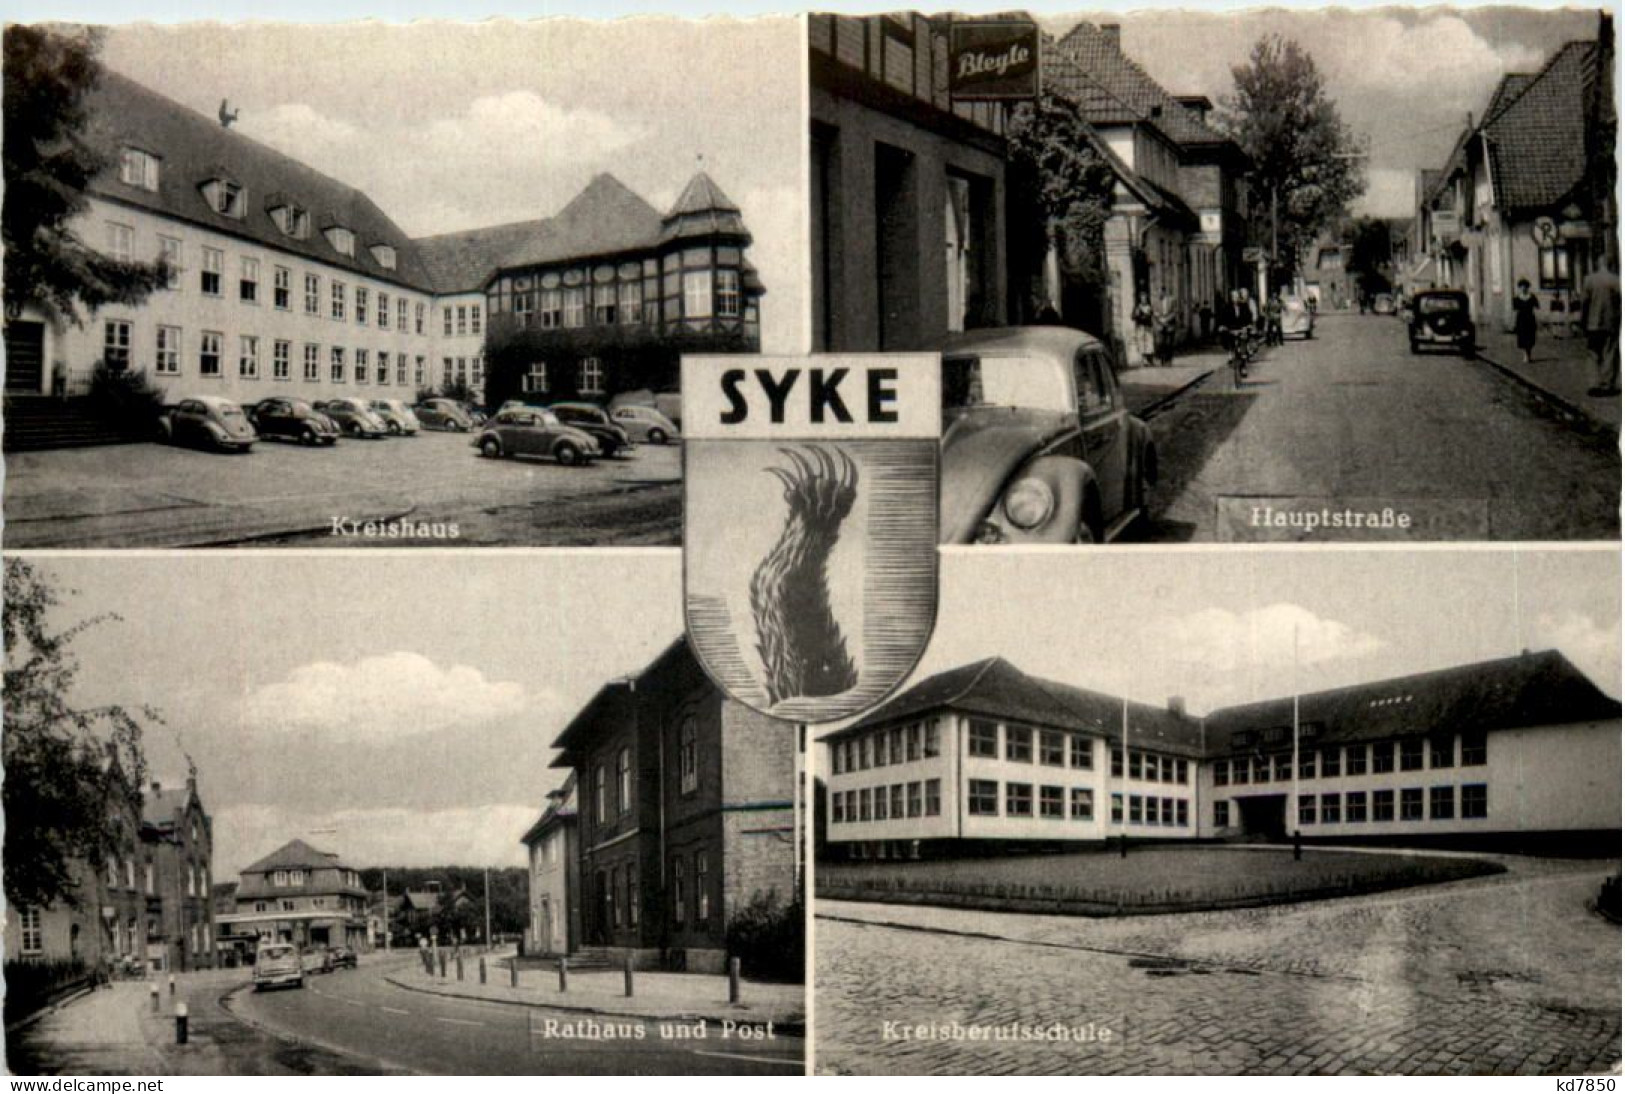 Syke - Diepholz